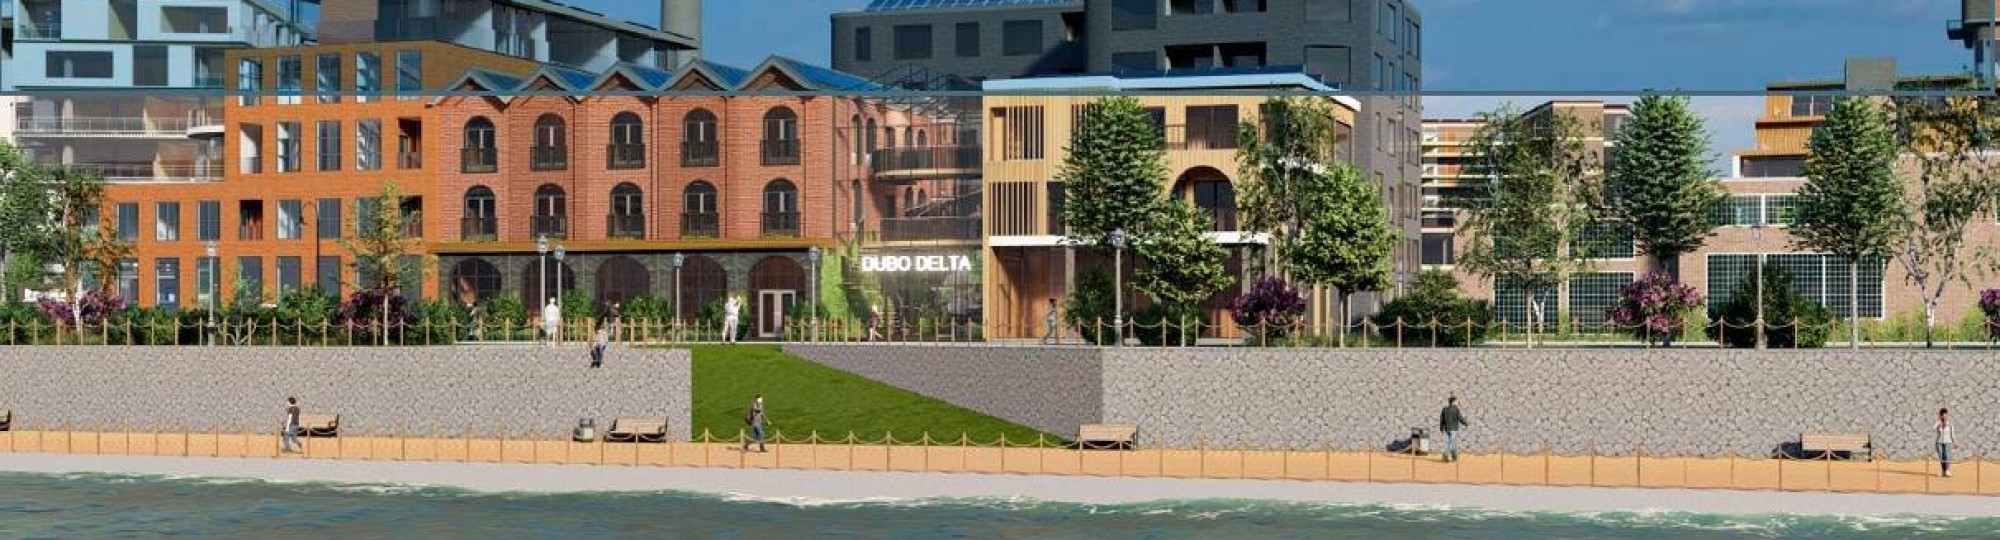 Impressie gebouwen Dubo Delta van projectgroep Brick by Brick, gezien vanaf de Rijn 